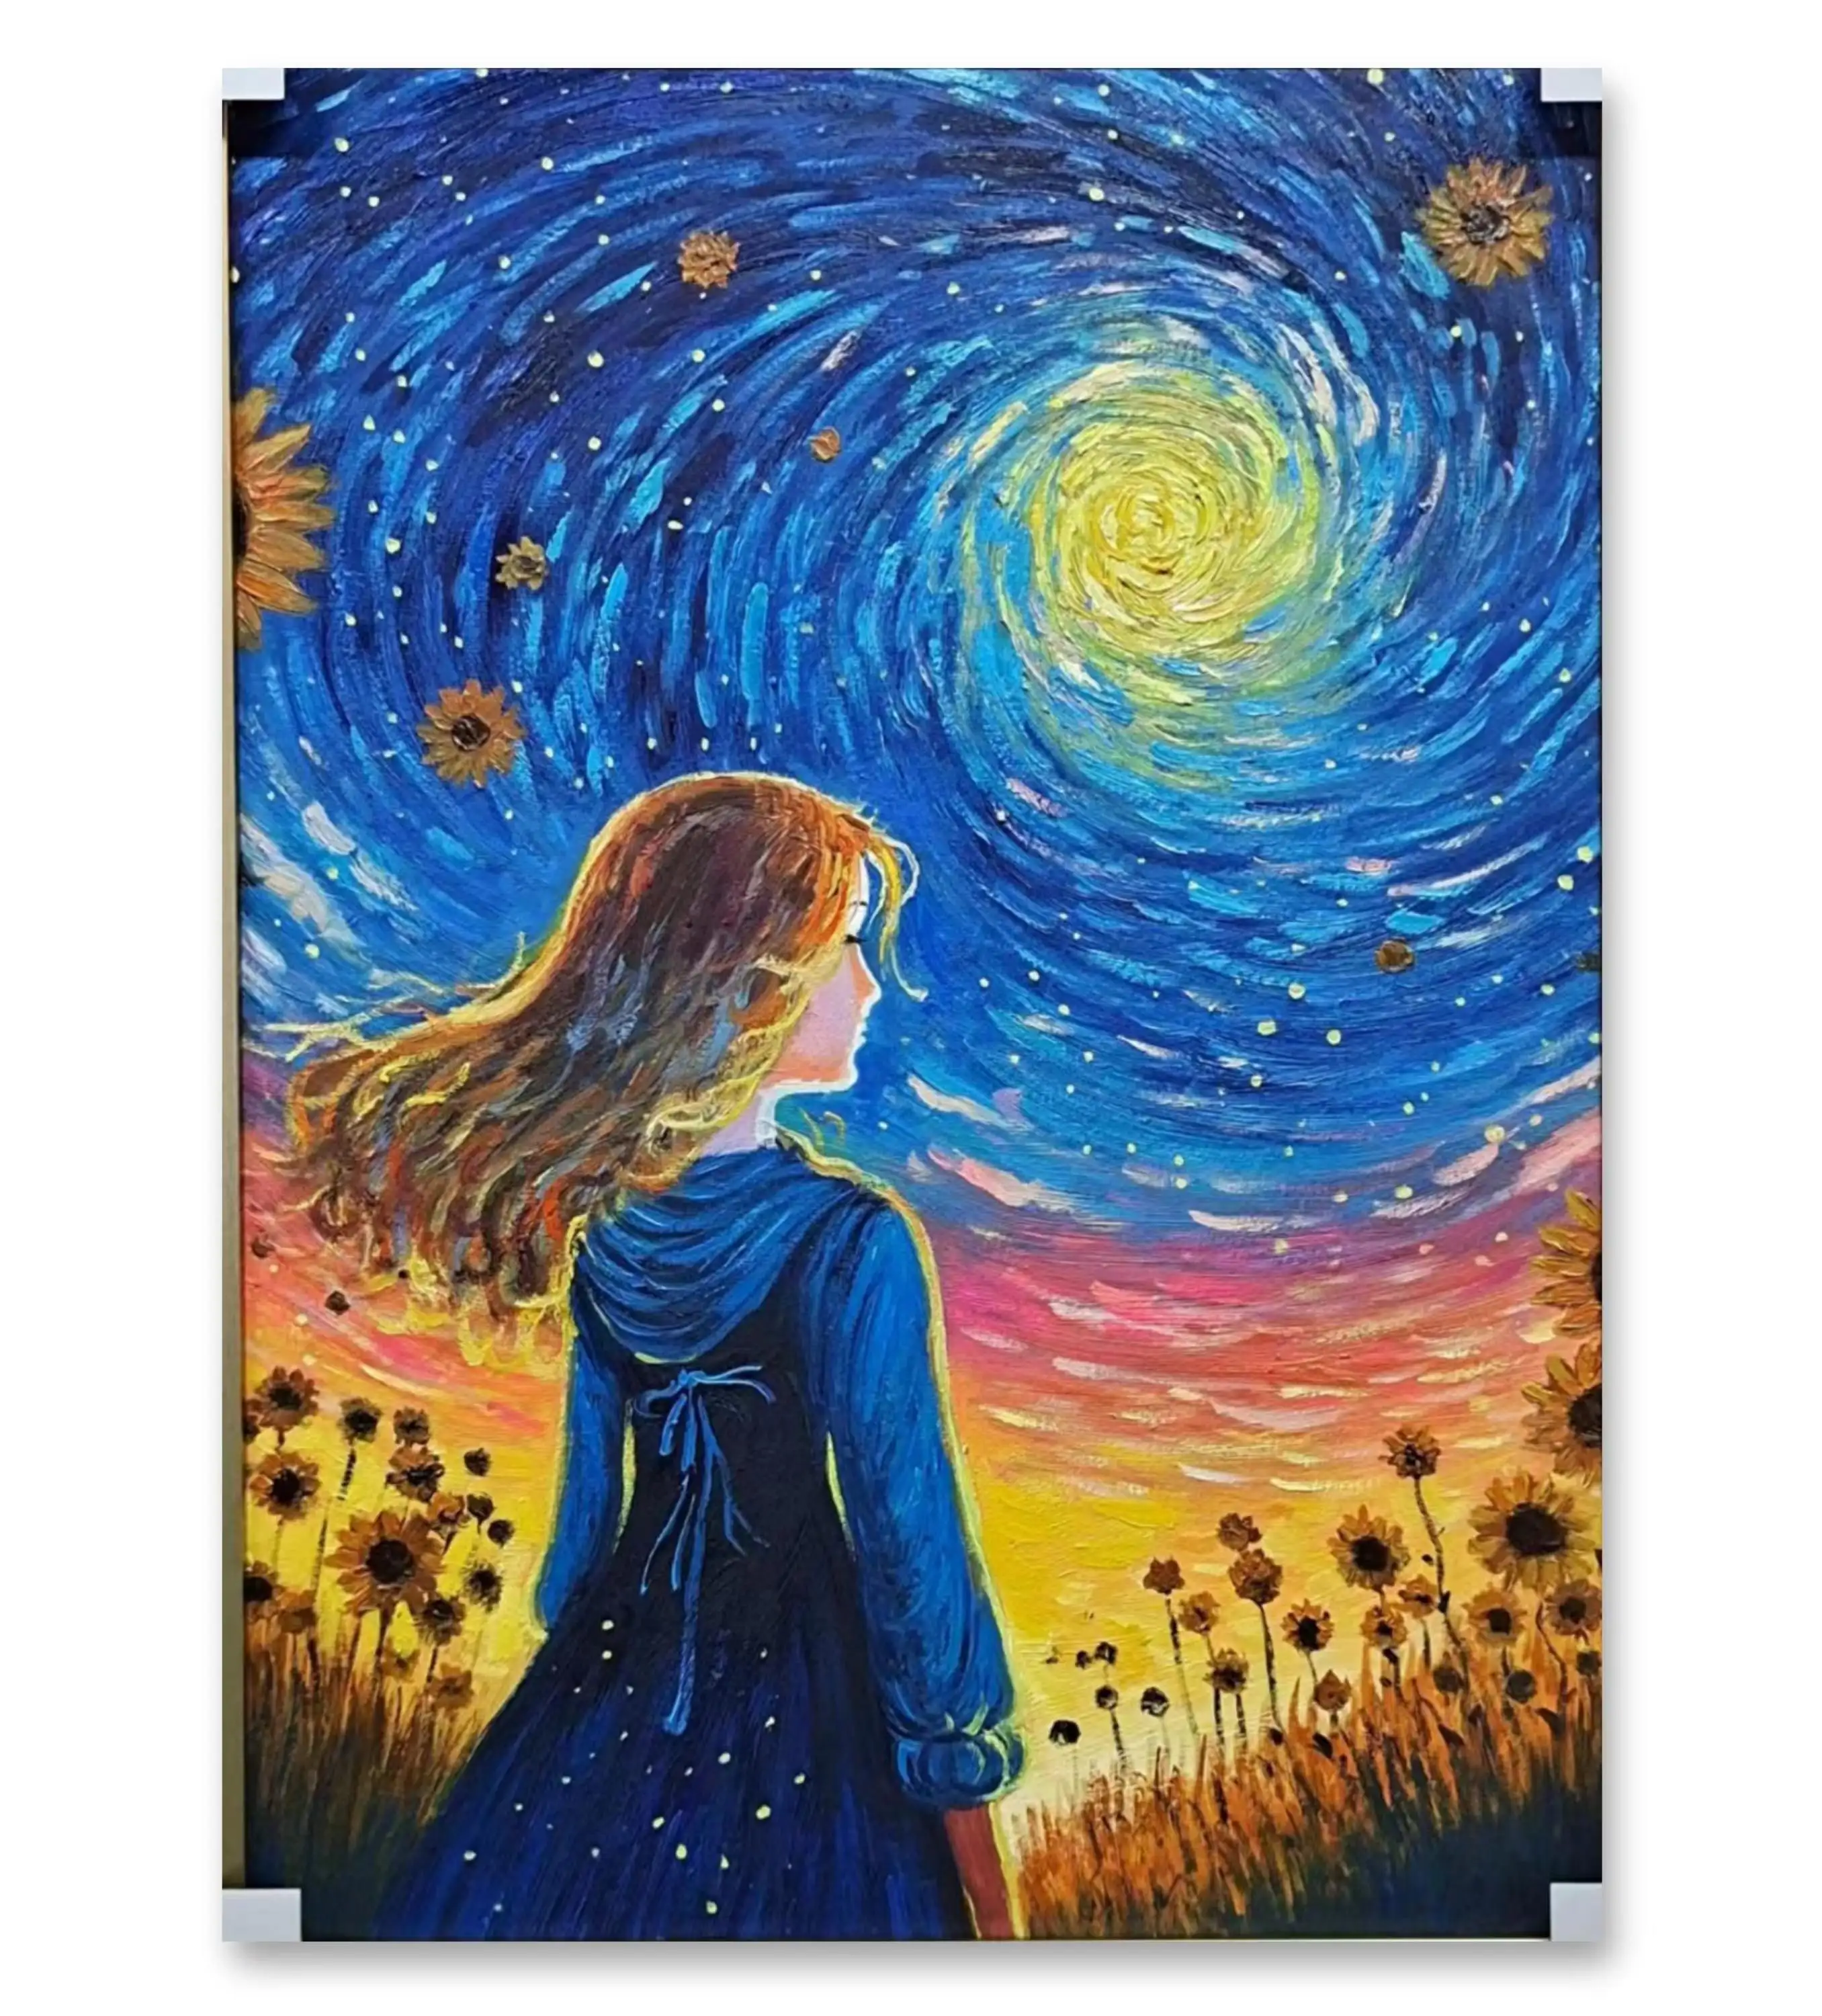 لوحة تجريدية مصنوعة يدويًا رسومات بإطار أصلي مخصص أصلية سلسلة لوحات سماء مليئة بالنجوم فتاة ذات سماء مليئة بالنجوم